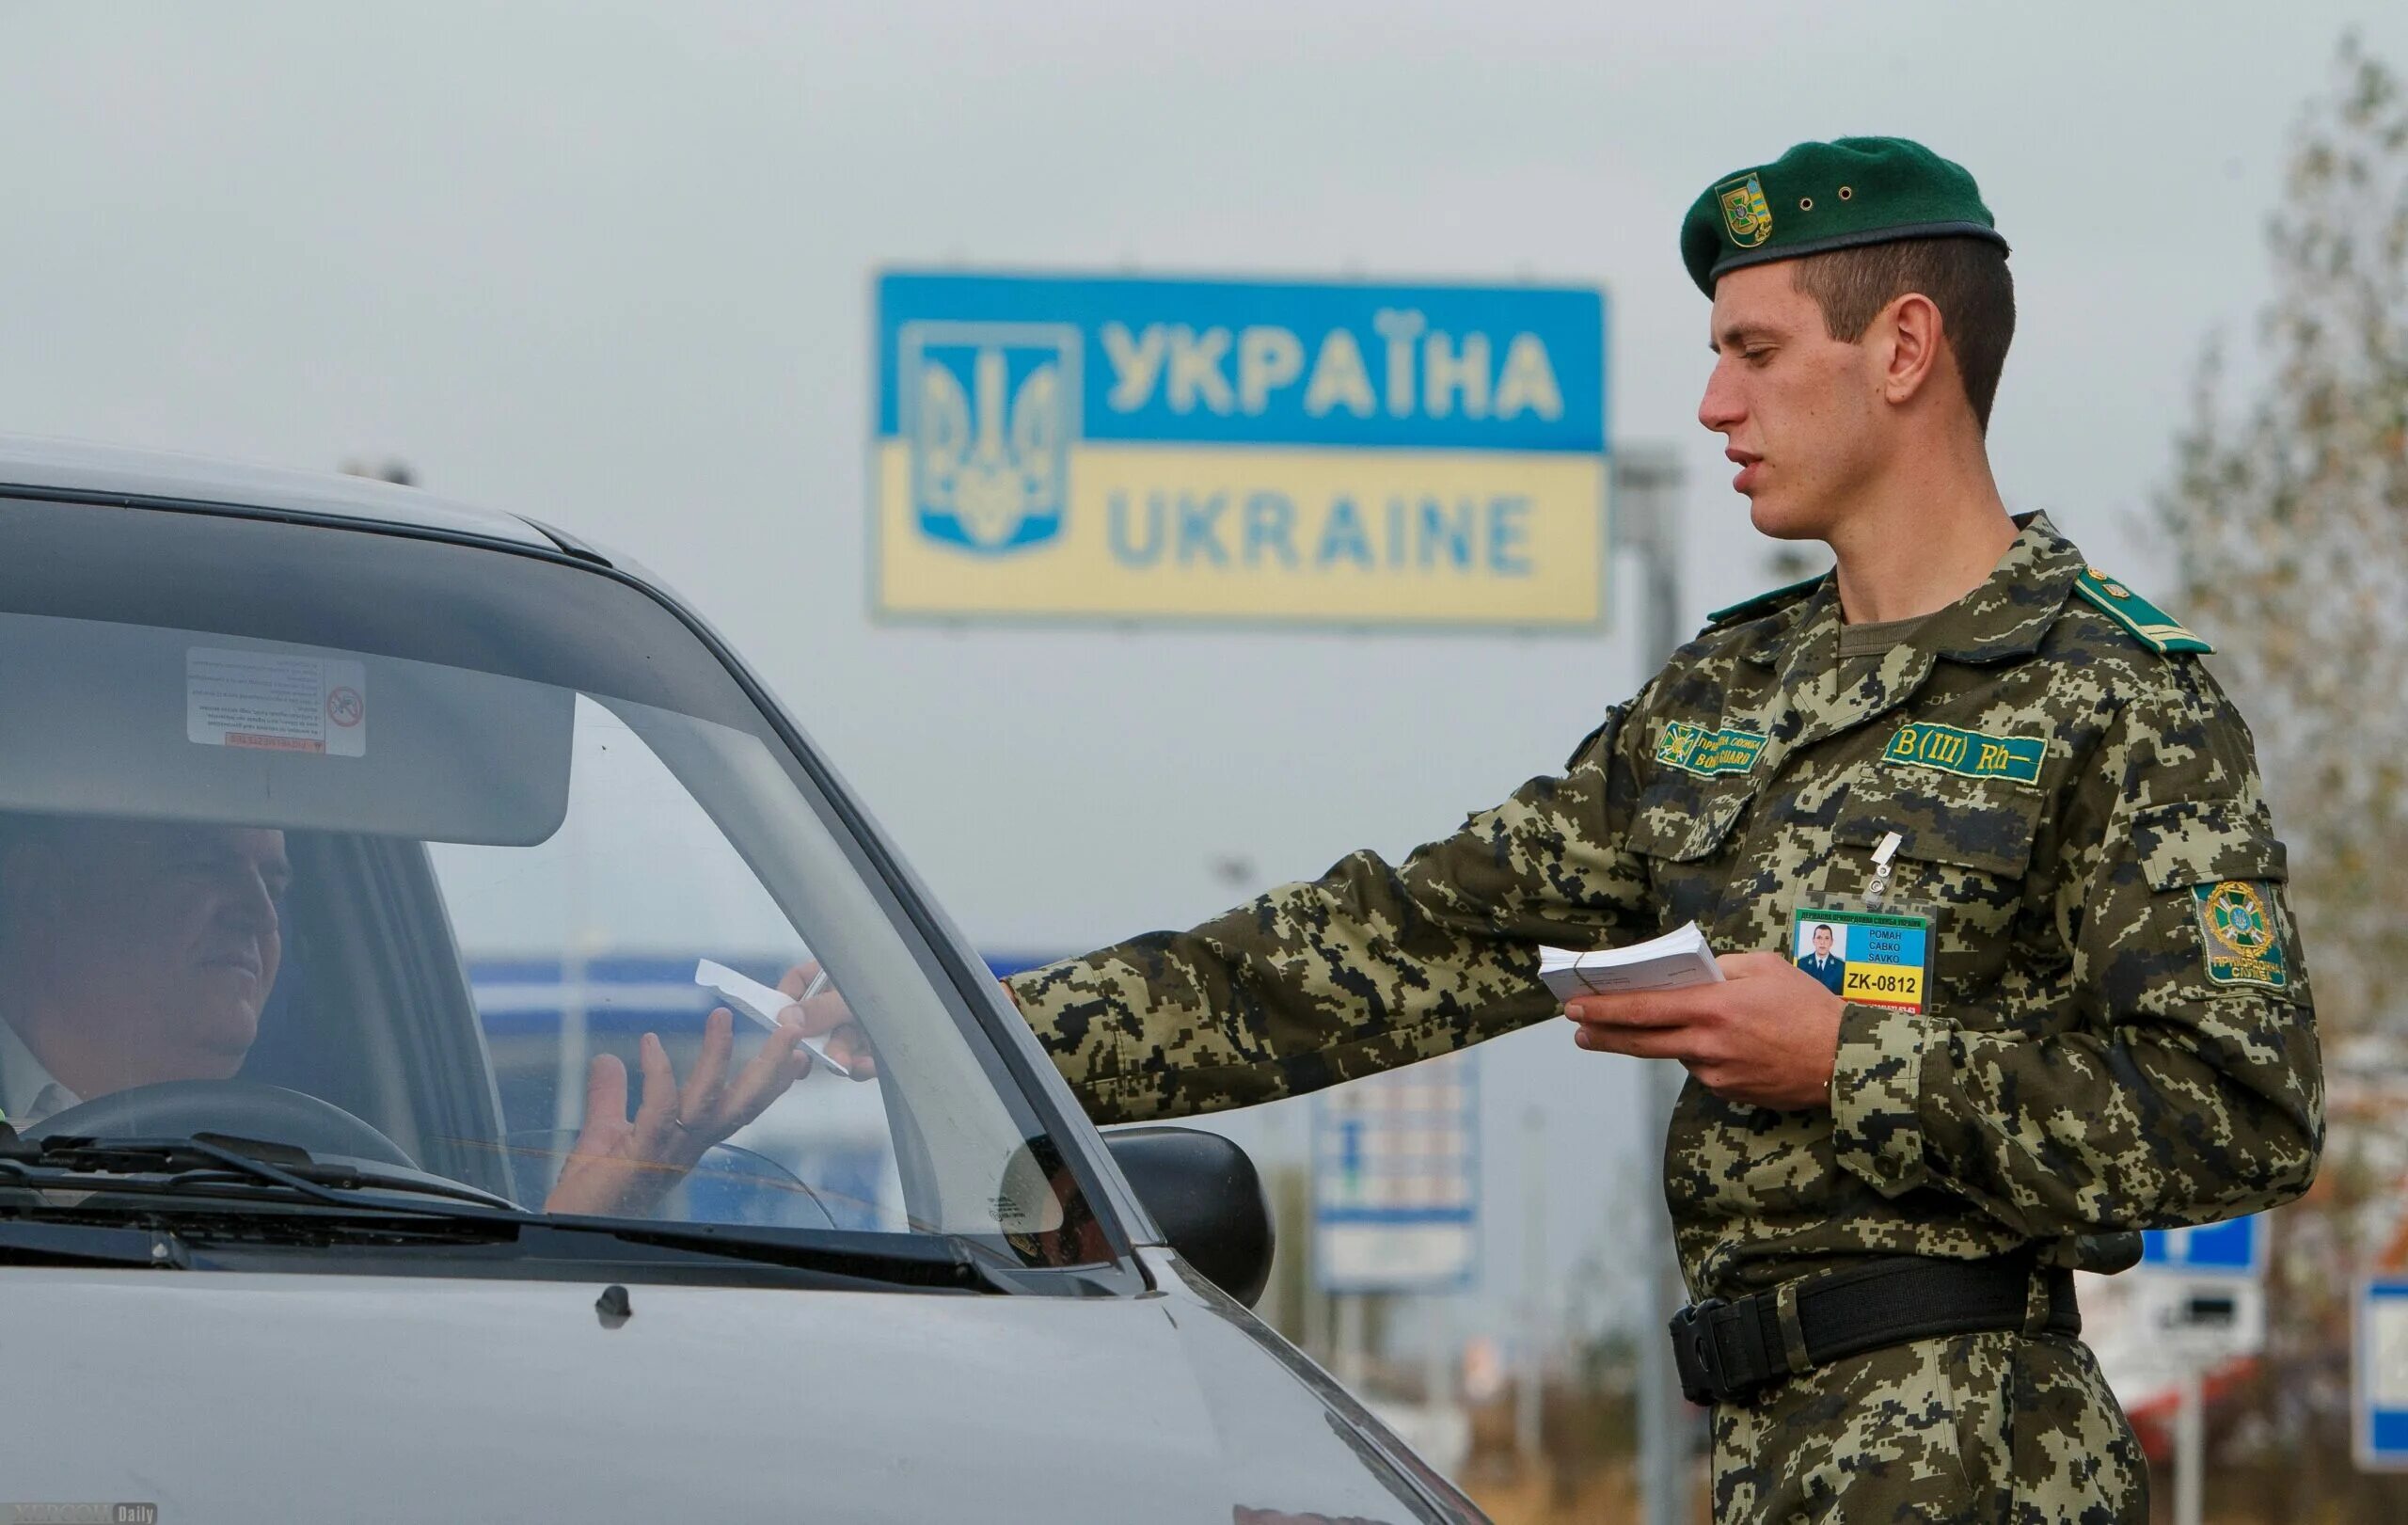 Украина граница мужчины. Украинские пограничники. Украинка пограничники. Пограничная служба Украины. Форма украинских пограничников.